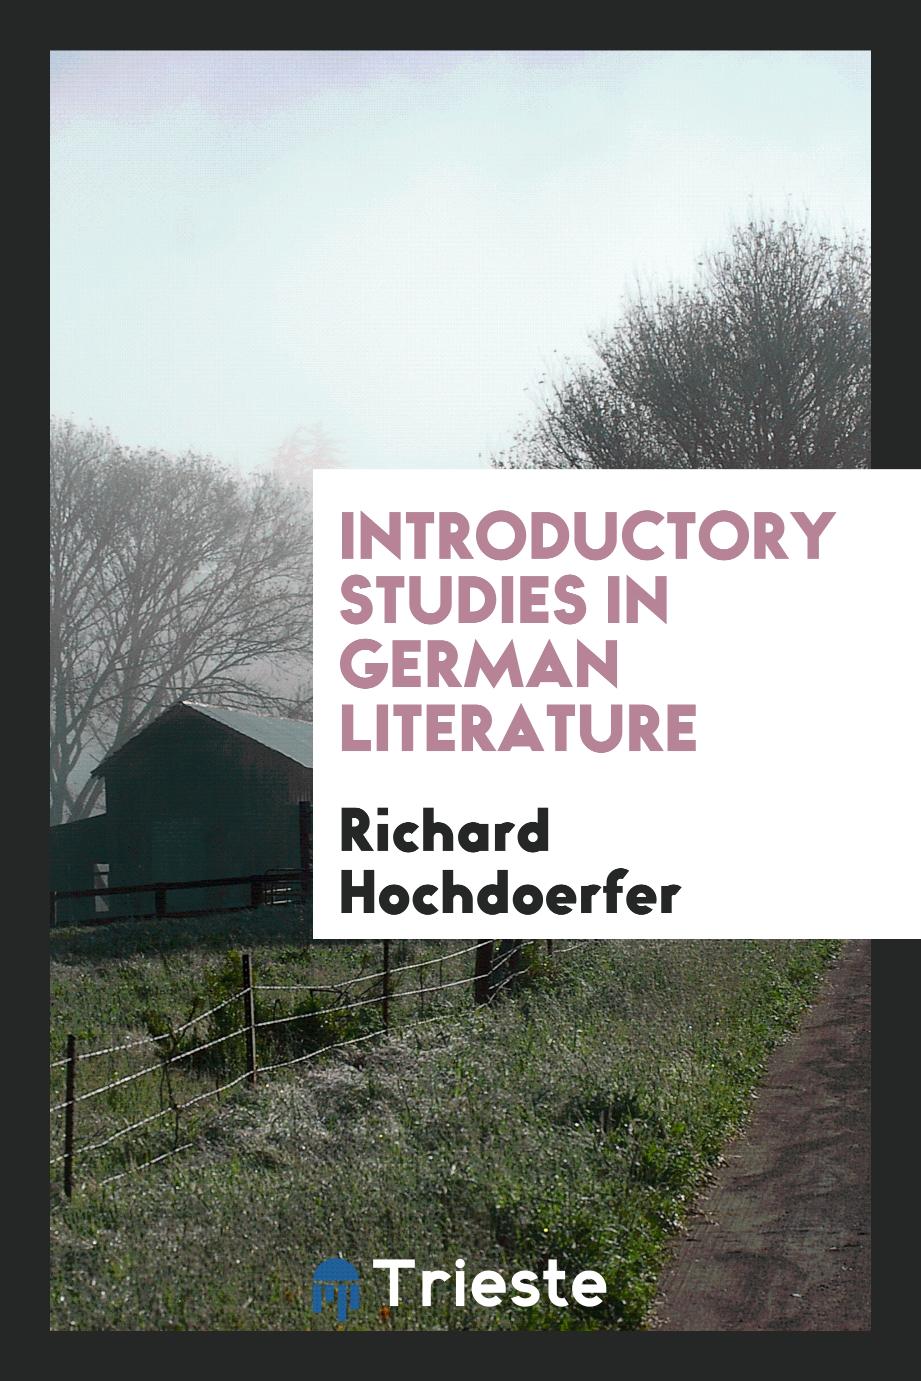 Introductory studies in German literature